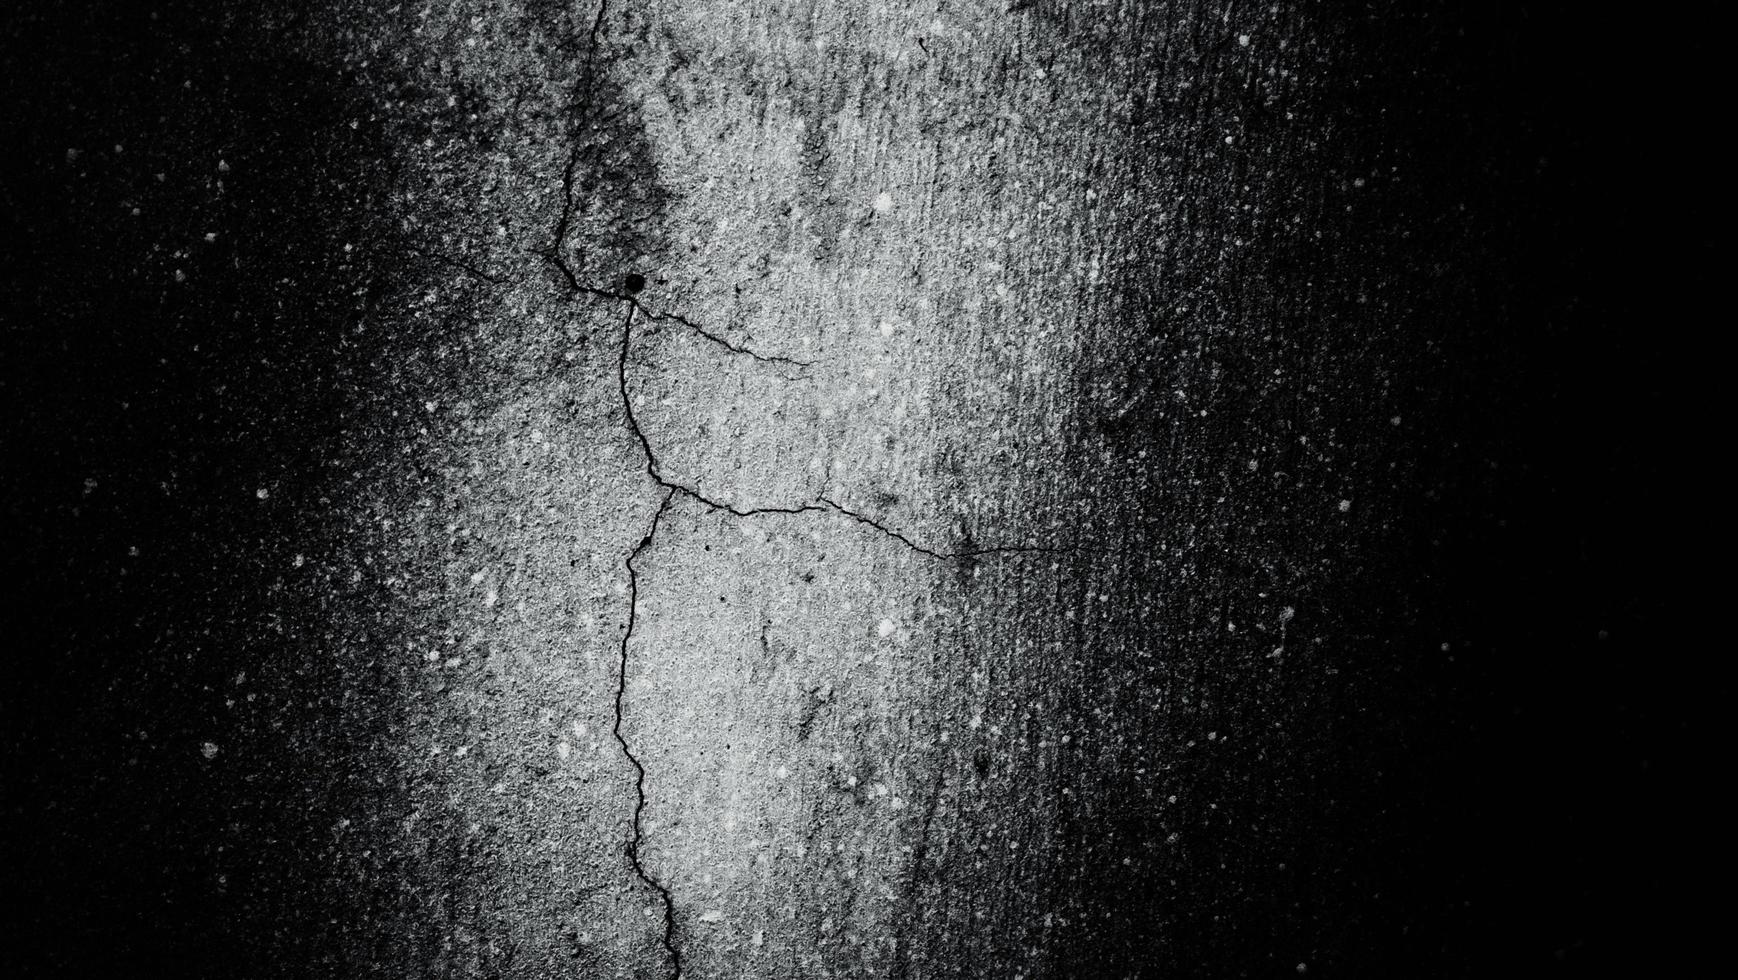 cemento oscuro aterrador para el fondo. paredes llenas de manchas y rayones foto